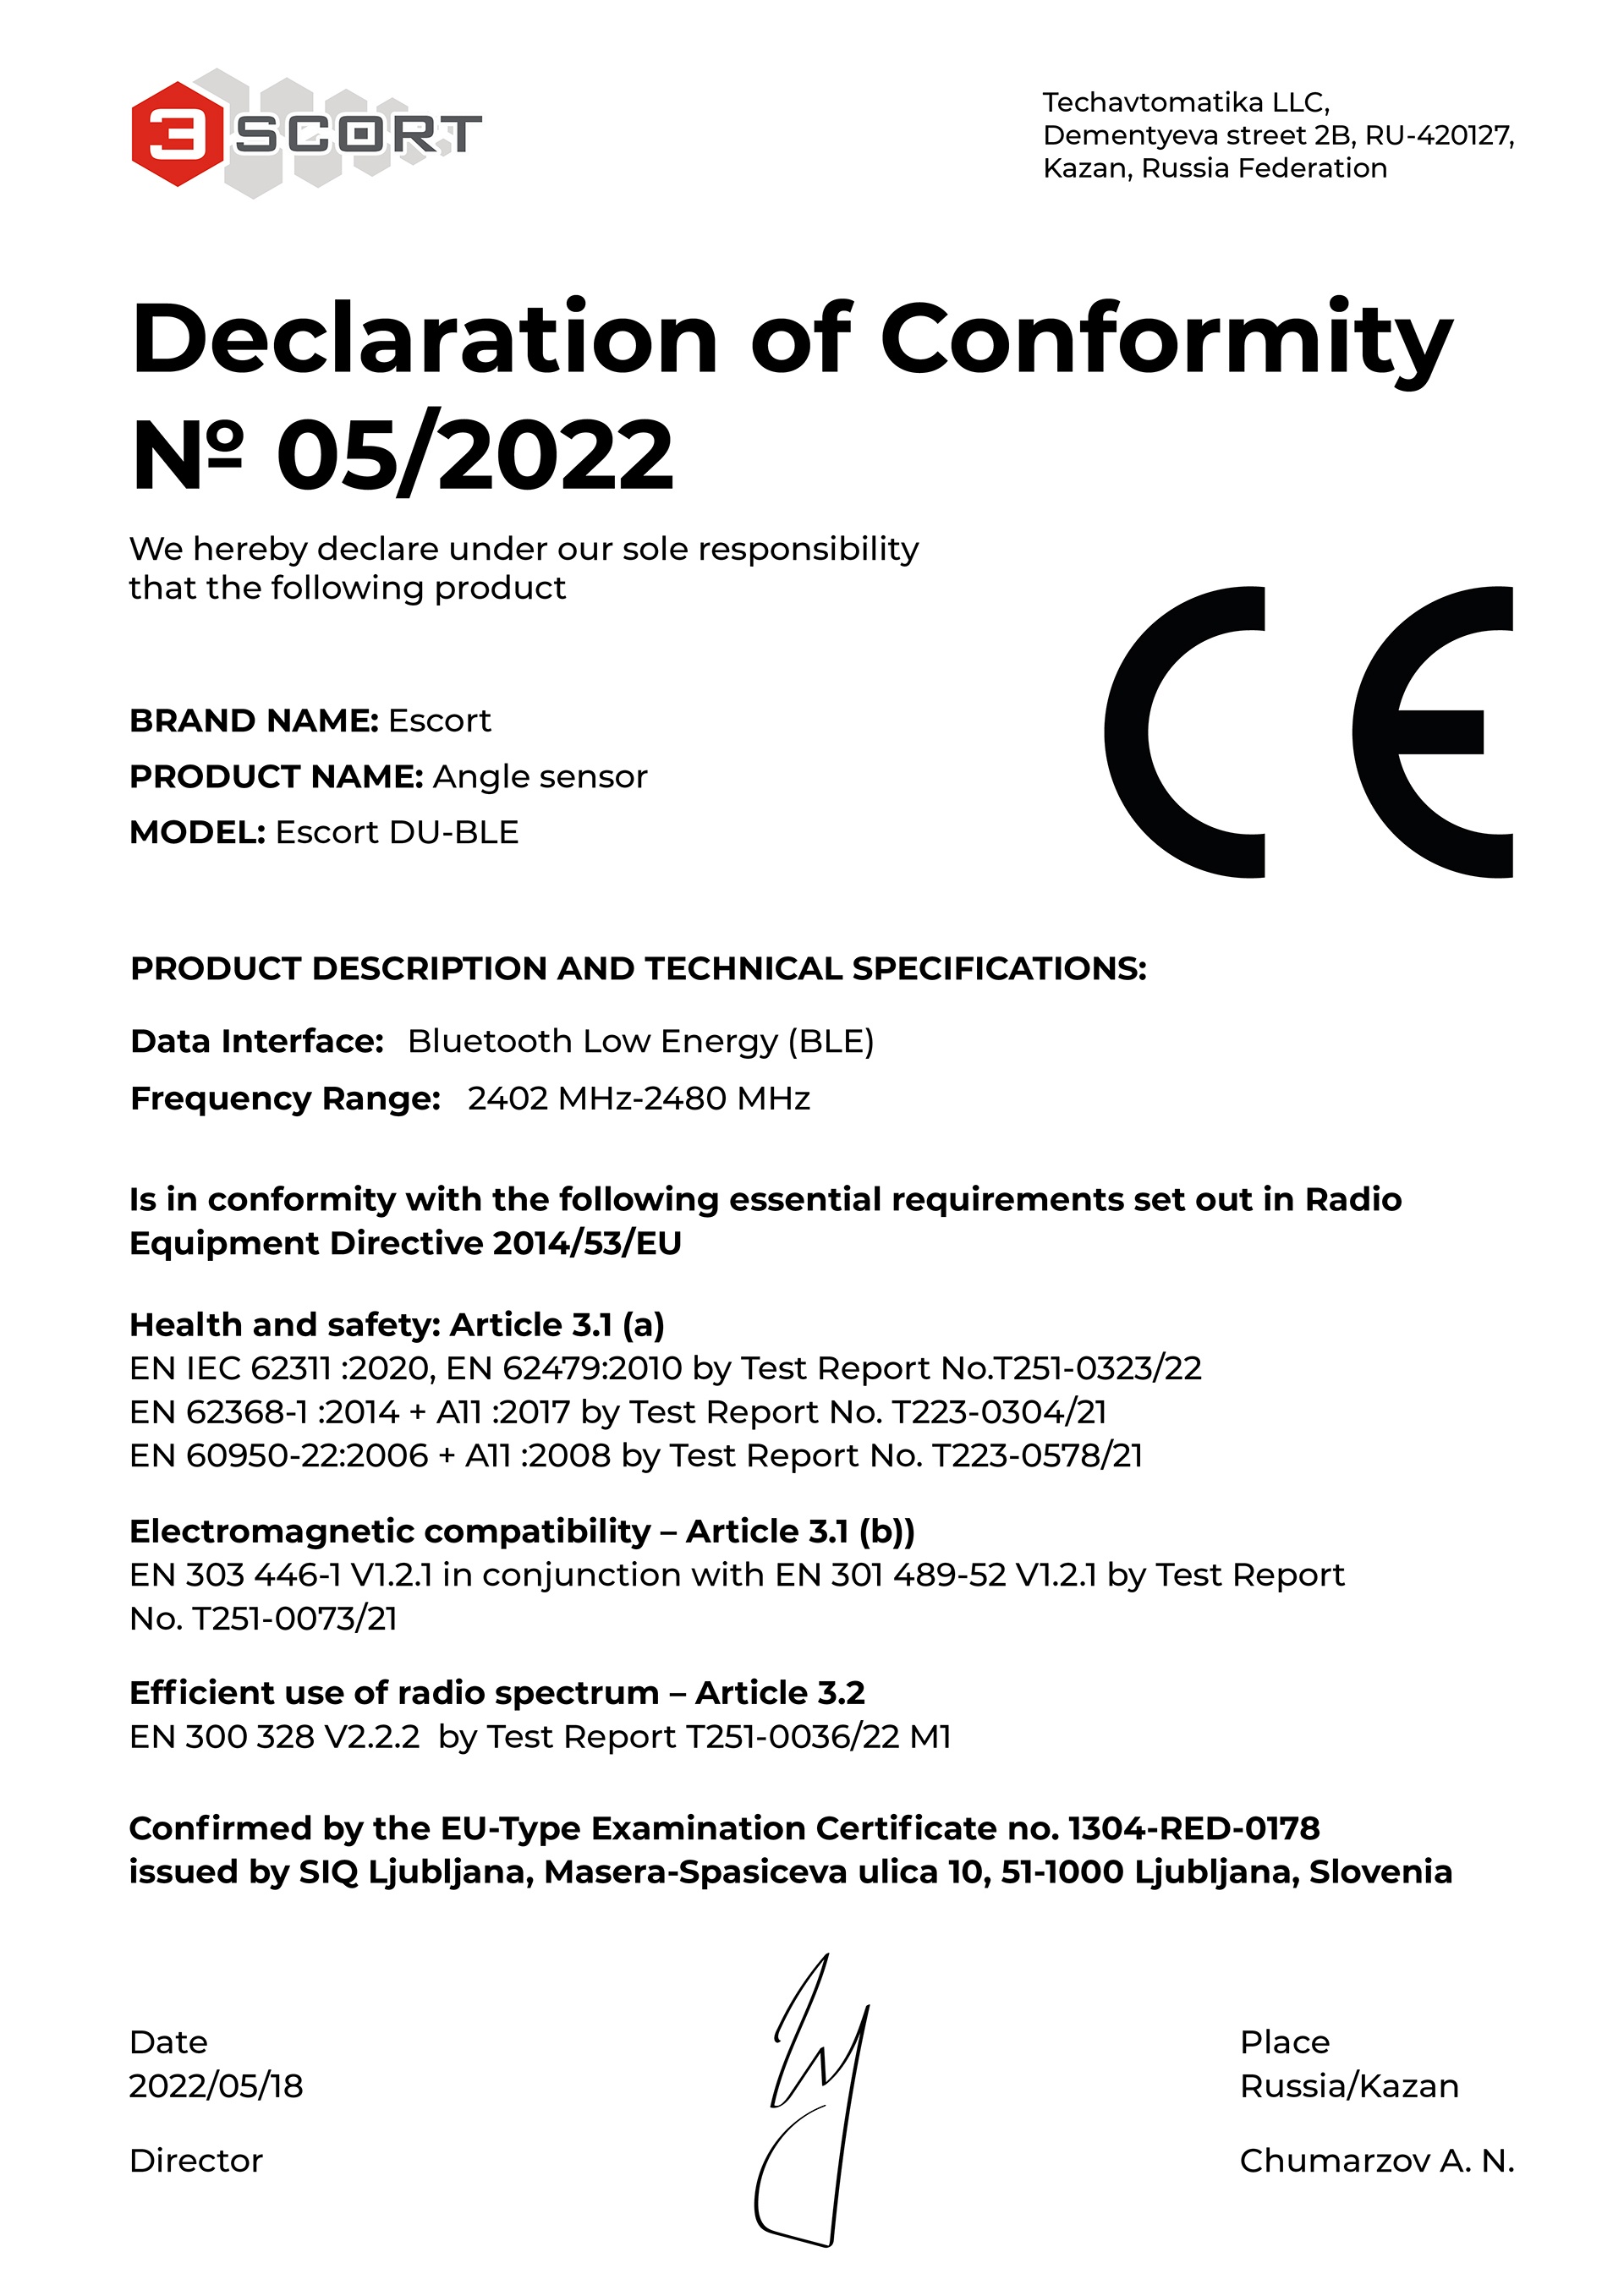 Сертификат Евросоюза СЕ на беспроводной датчик угла наклона Эскорт DU-BLE